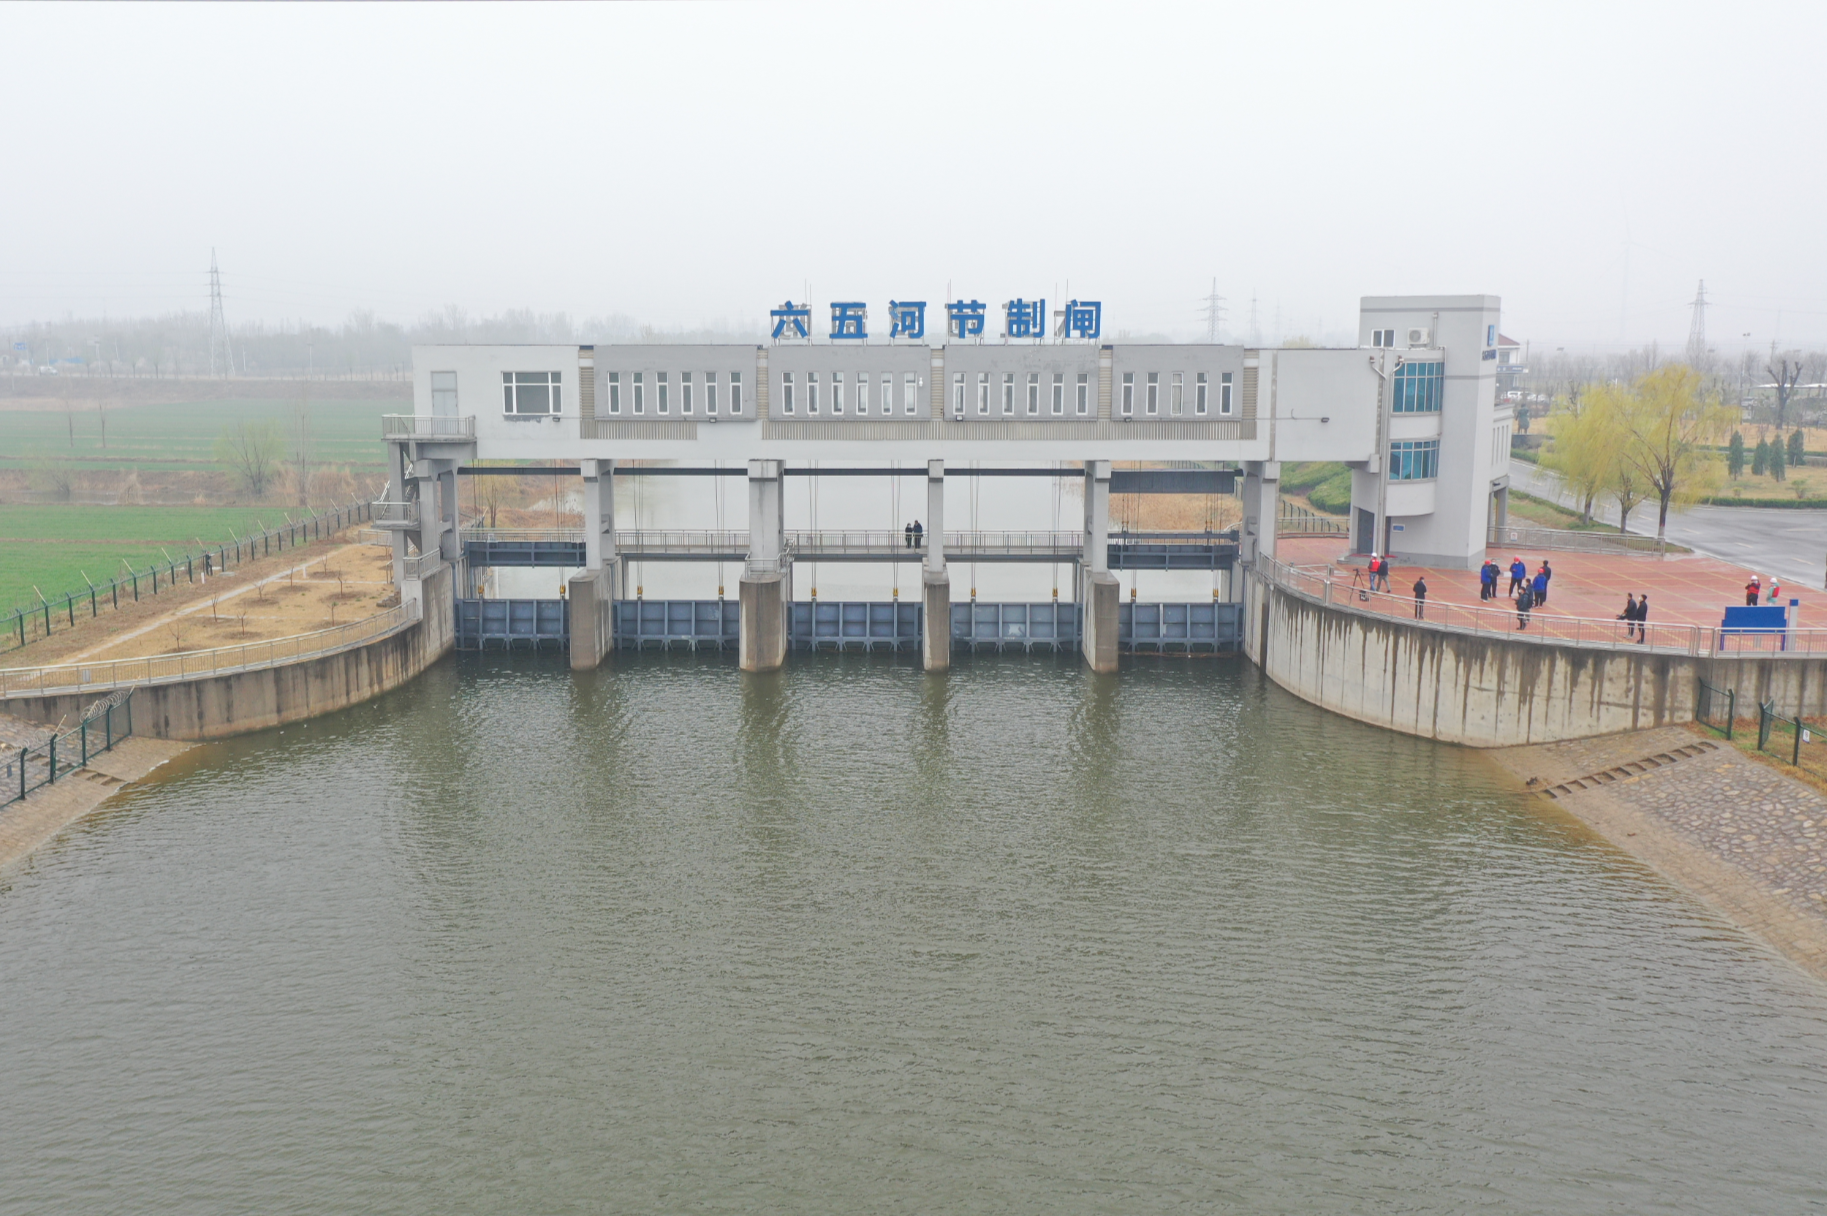 南水北调东线北延应急供水工程计划向津冀供水1.83亿立方米